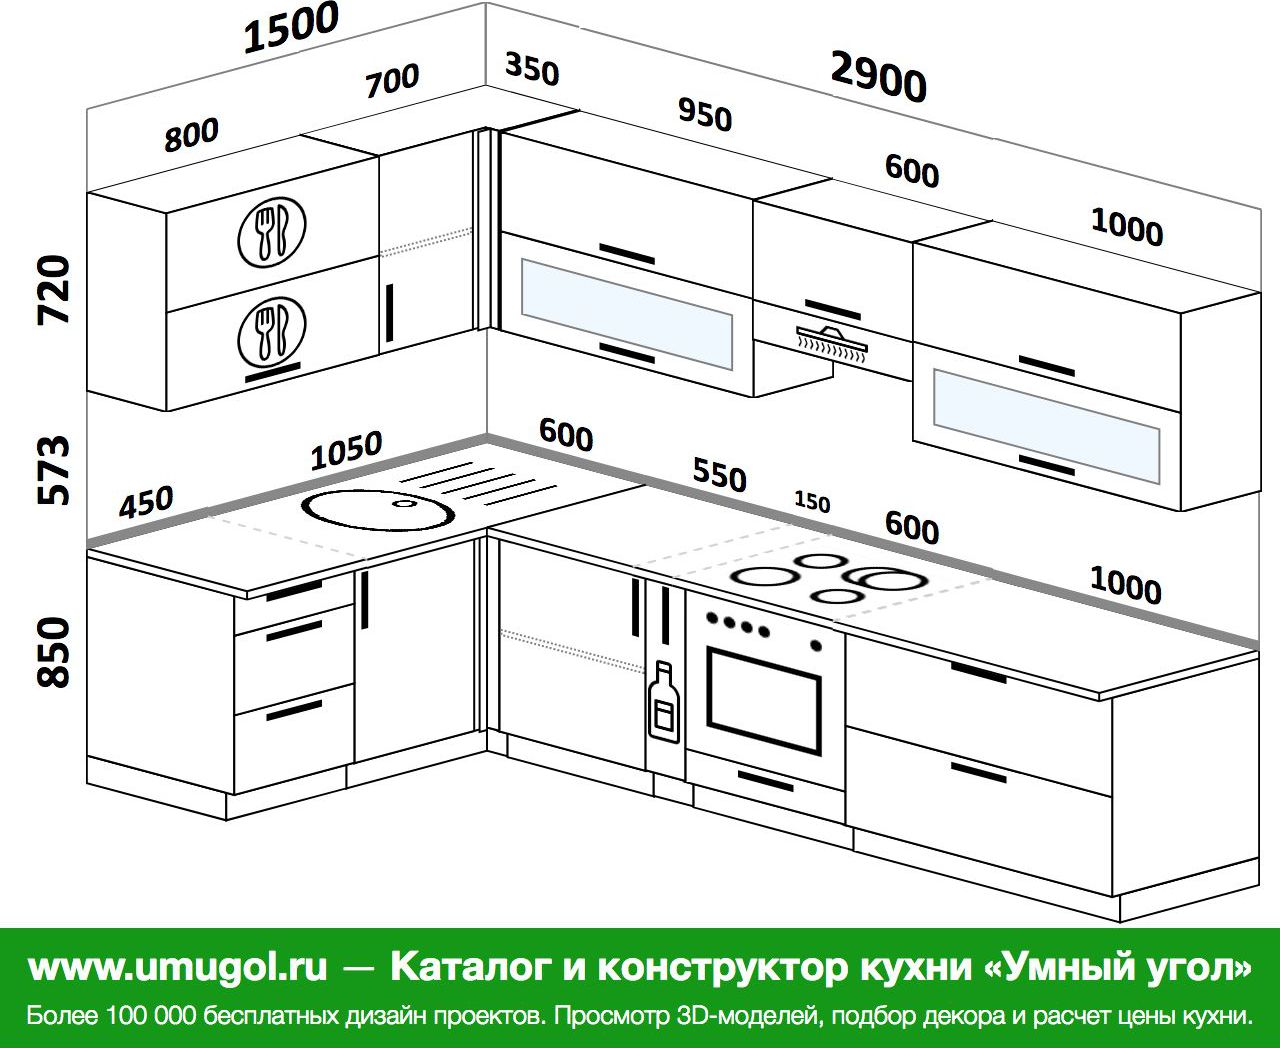 Размер на кухне между шкафами